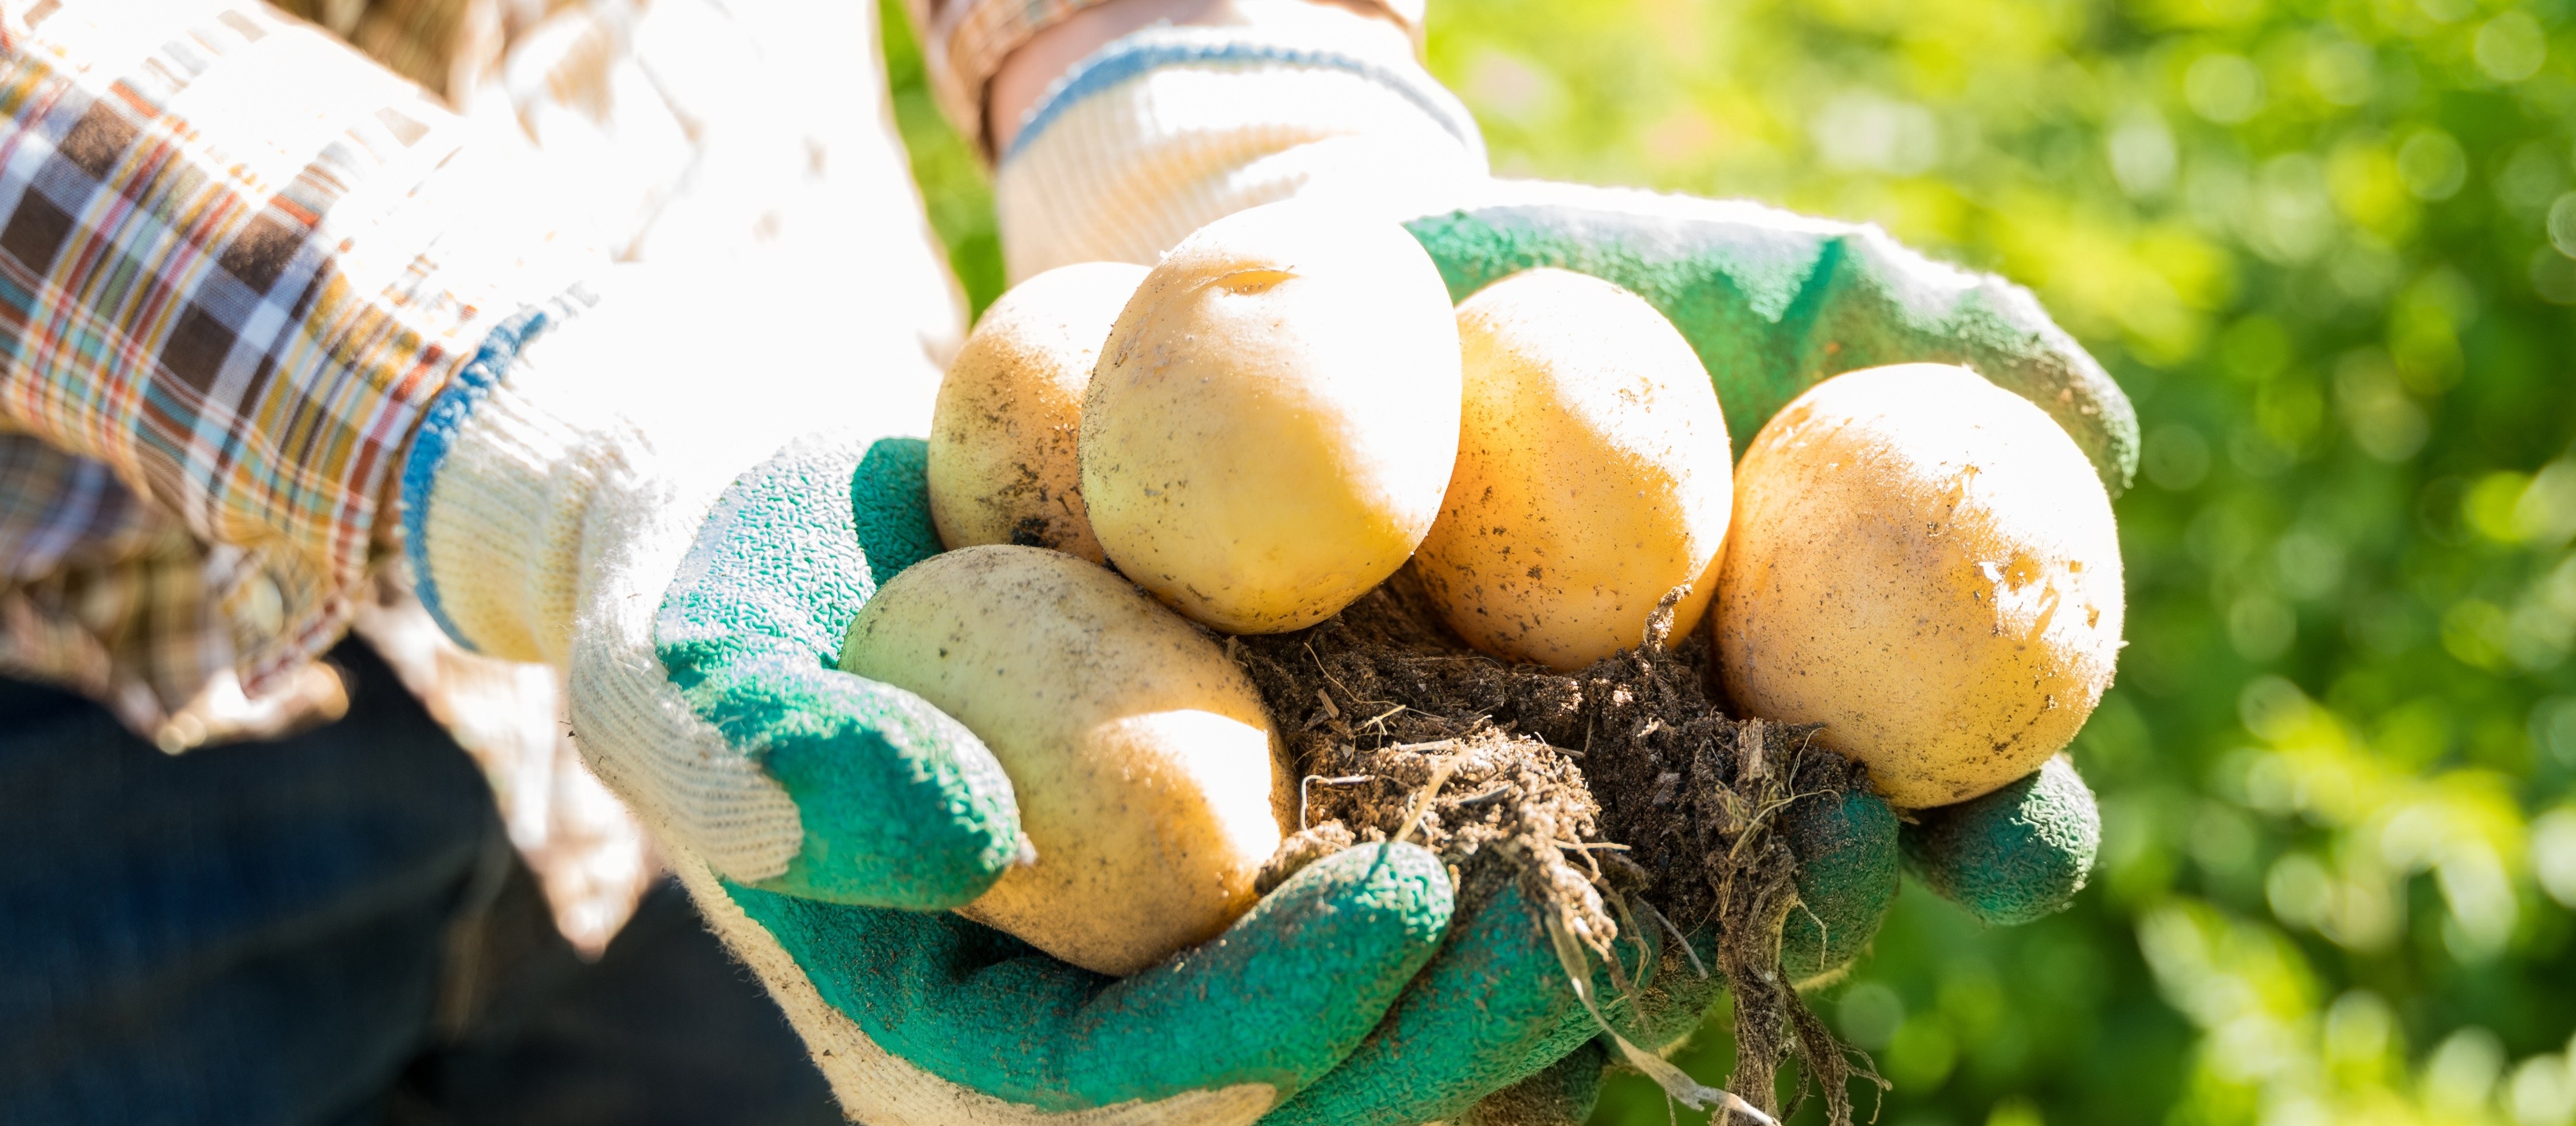 Colheita da segunda safra de batatas no estado está em 78%, diz Deral